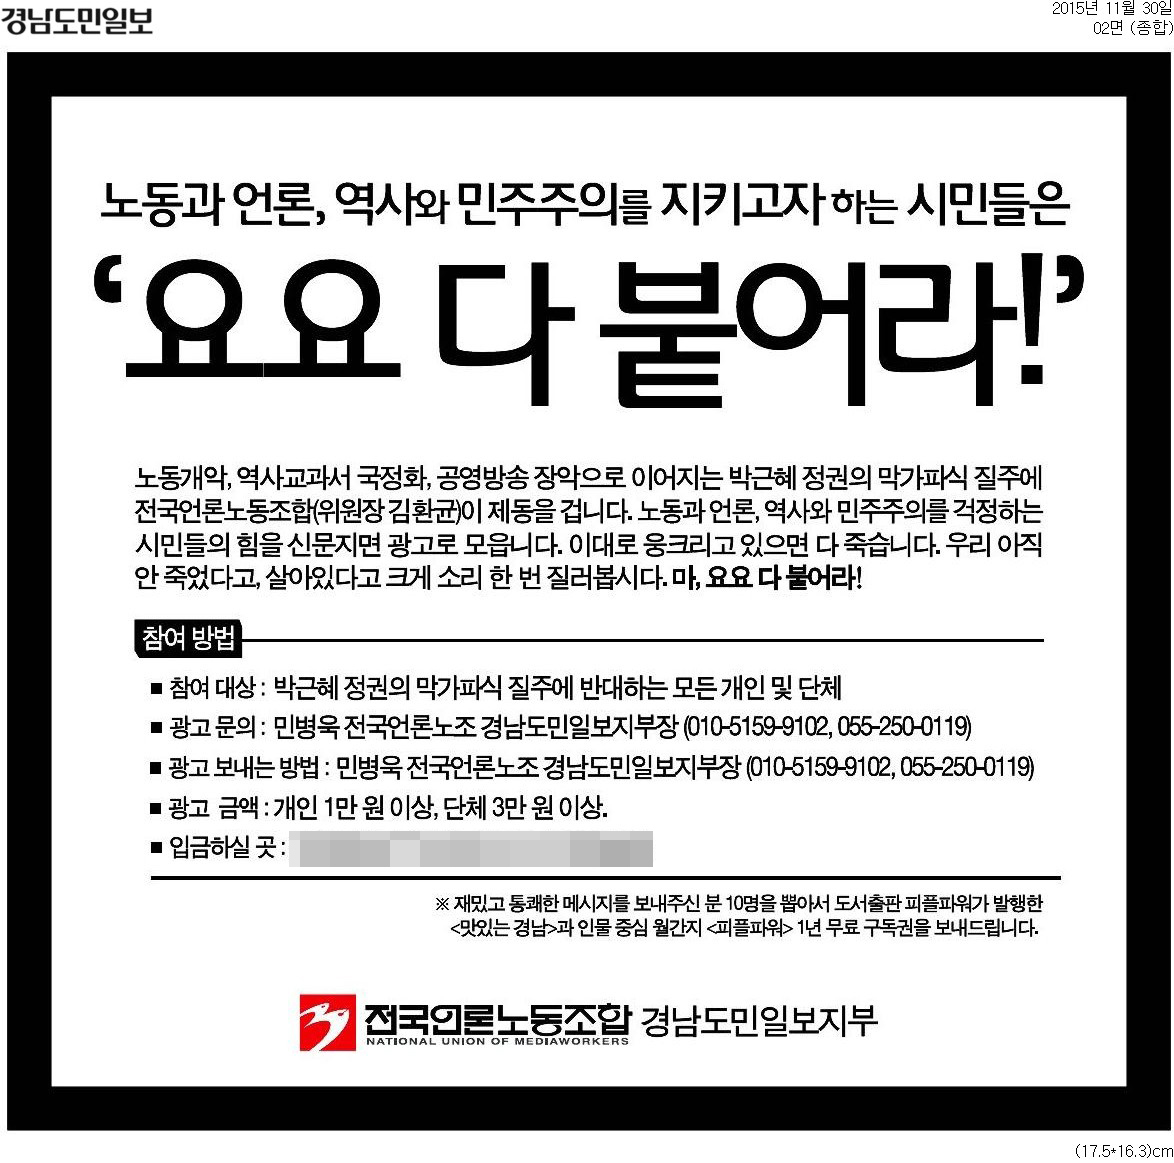 2015년 11월 30일 자 <경남도민일보> 2면에 실린 예고 광고.